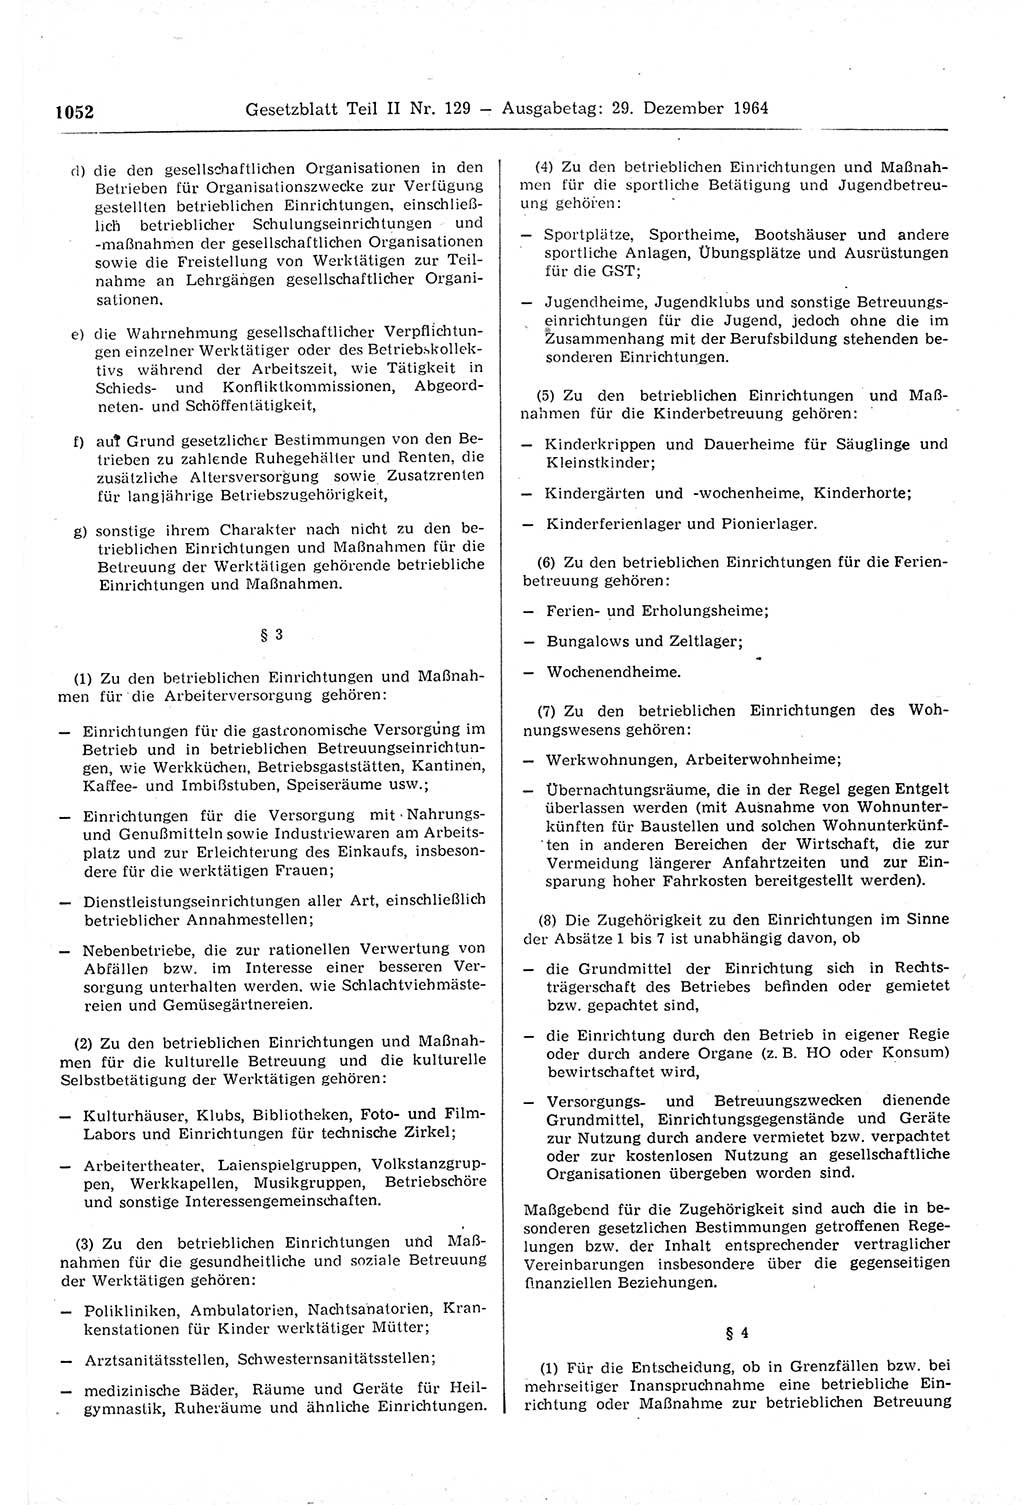 Gesetzblatt (GBl.) der Deutschen Demokratischen Republik (DDR) Teil ⅠⅠ 1964, Seite 1052 (GBl. DDR ⅠⅠ 1964, S. 1052)